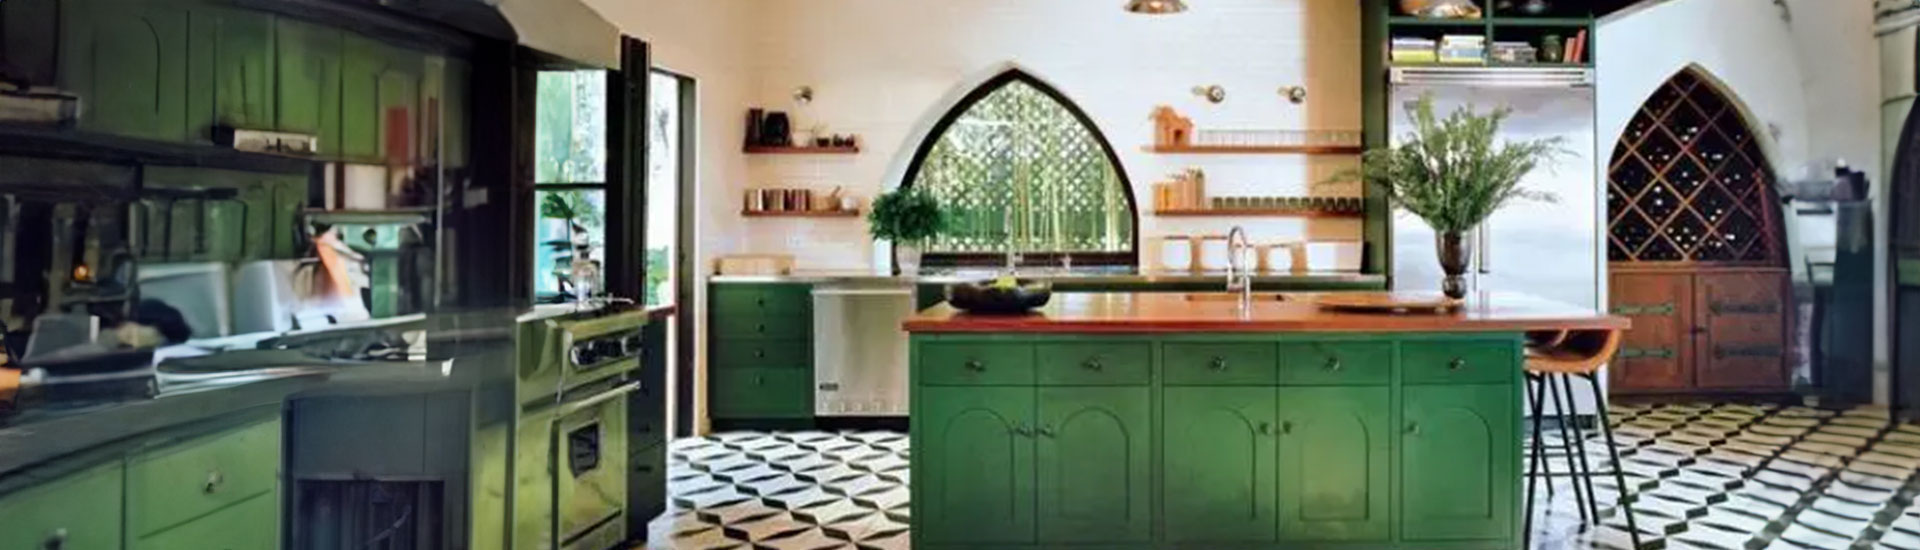 Green Kitchen Cabinet Wraps